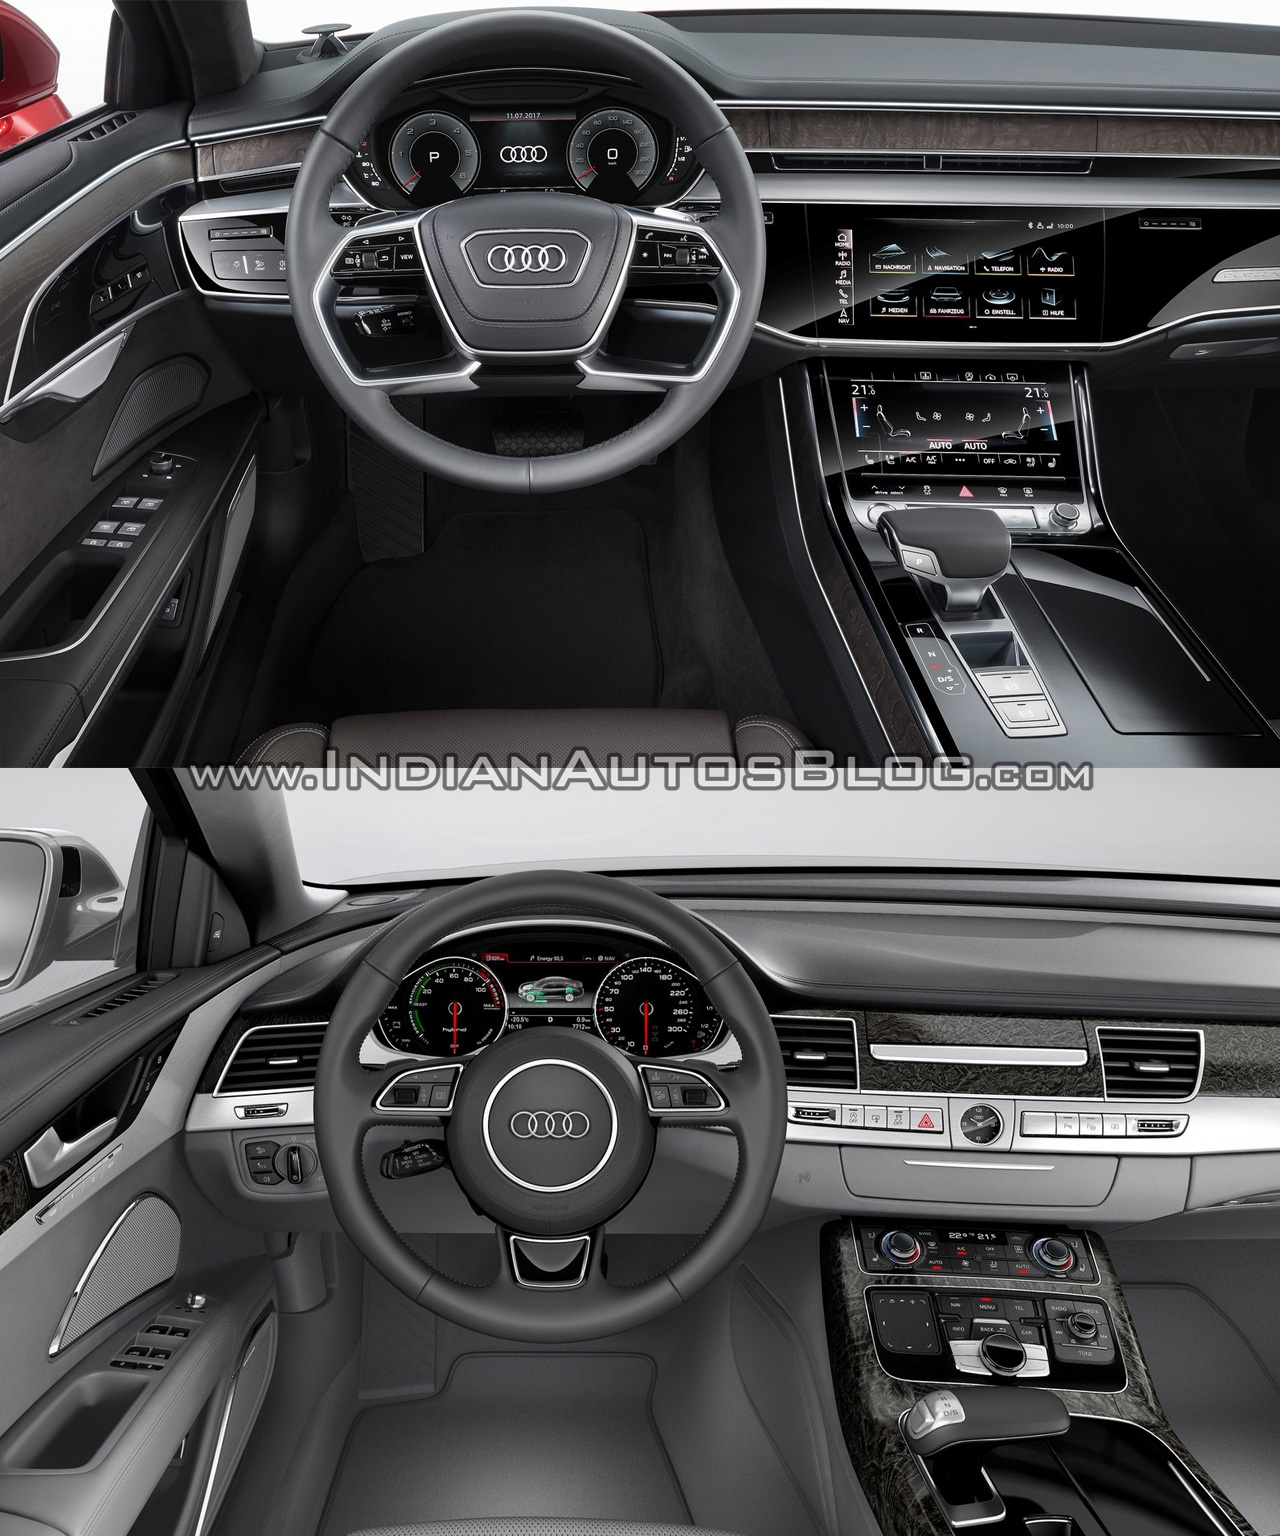 2018 Audi A8 Vs Audi 2014 Audi A8 Old Vs New